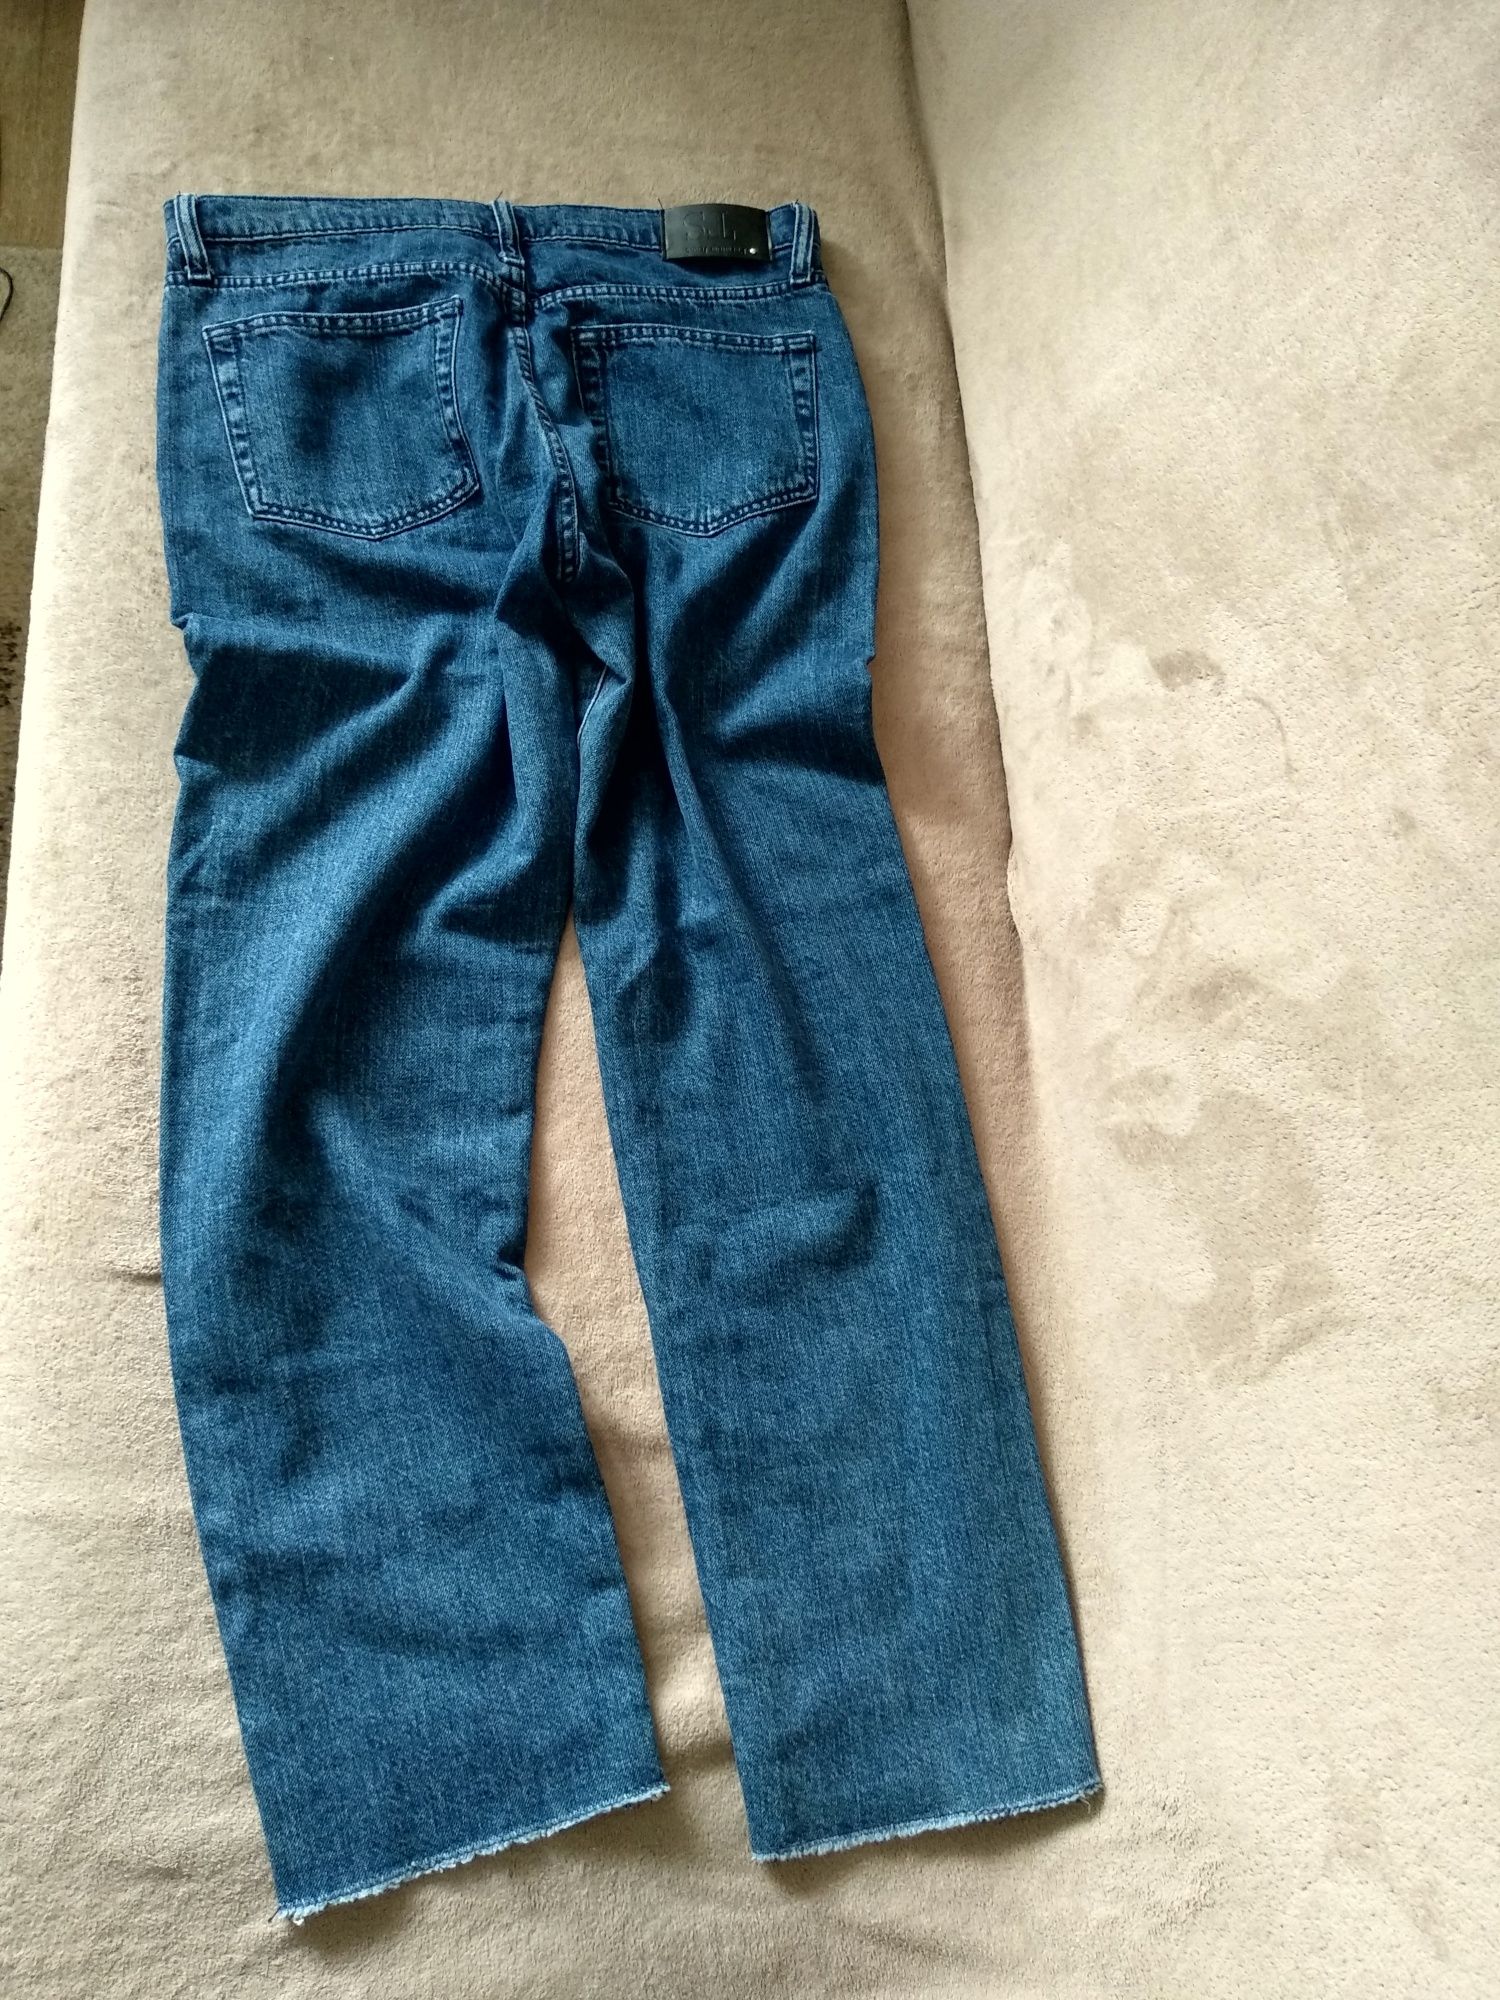 Spodnie jeansowe damskie firmy Top Secret rozmiar 38